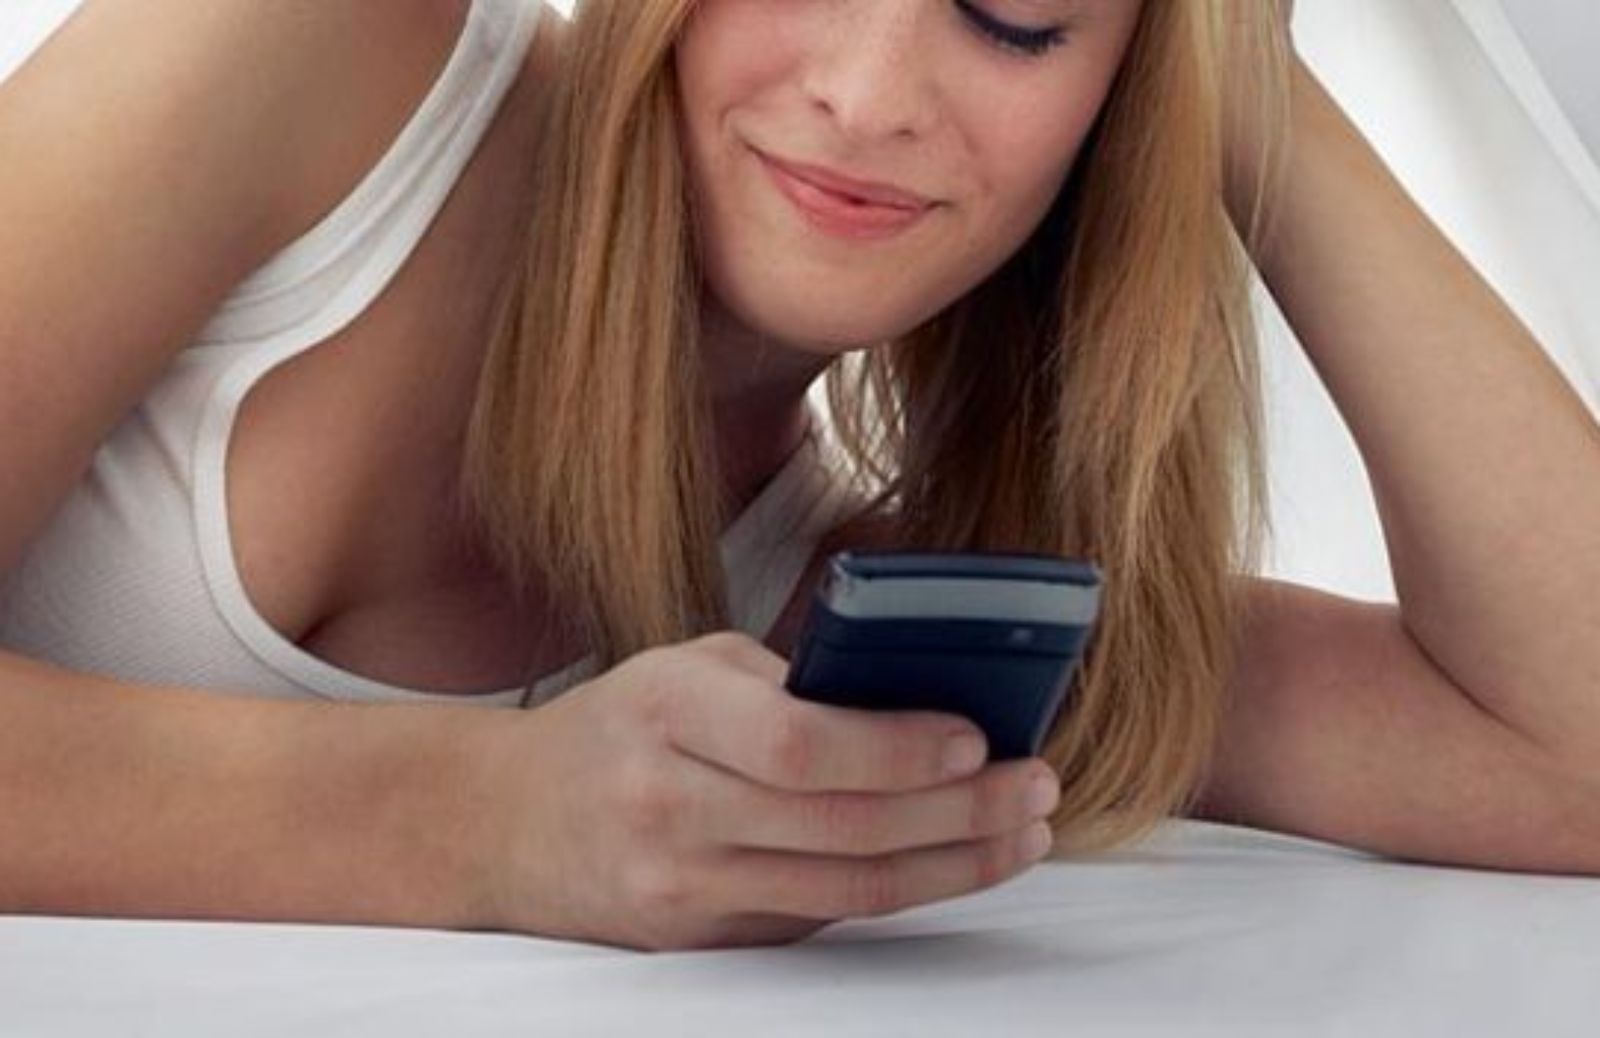 Come flirtare via sms: gli errori da evitare